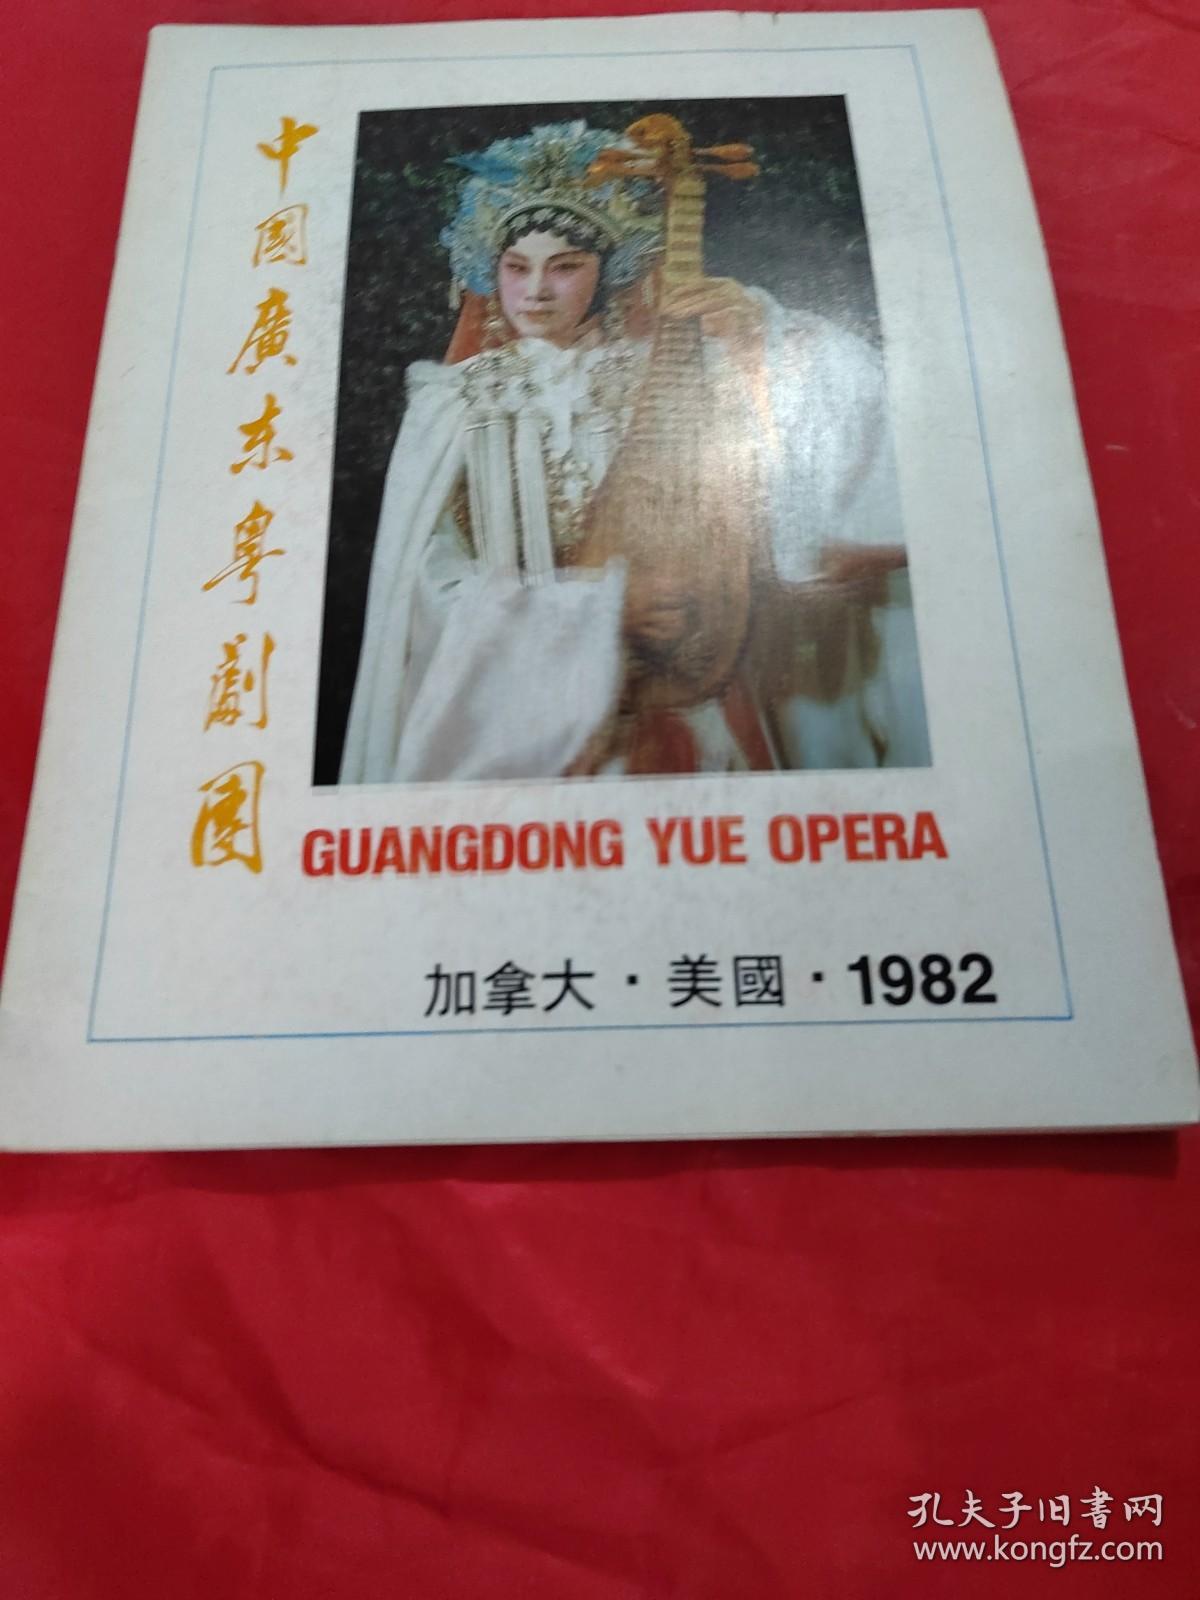 中国广东粤剧团 加拿大·美国·1982